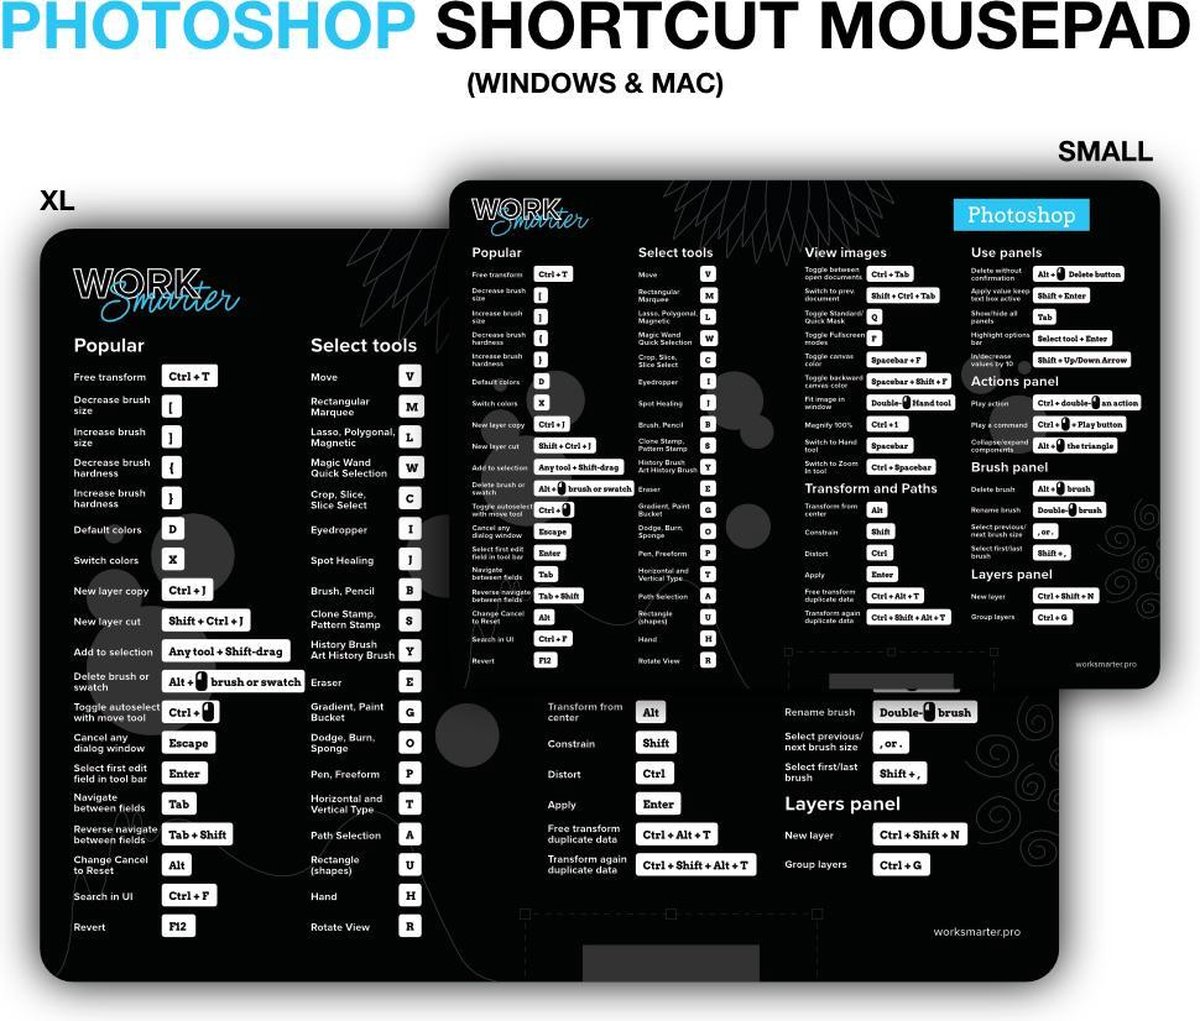 Adobe Photoshop Shortcut Mousepad - XL - Mac